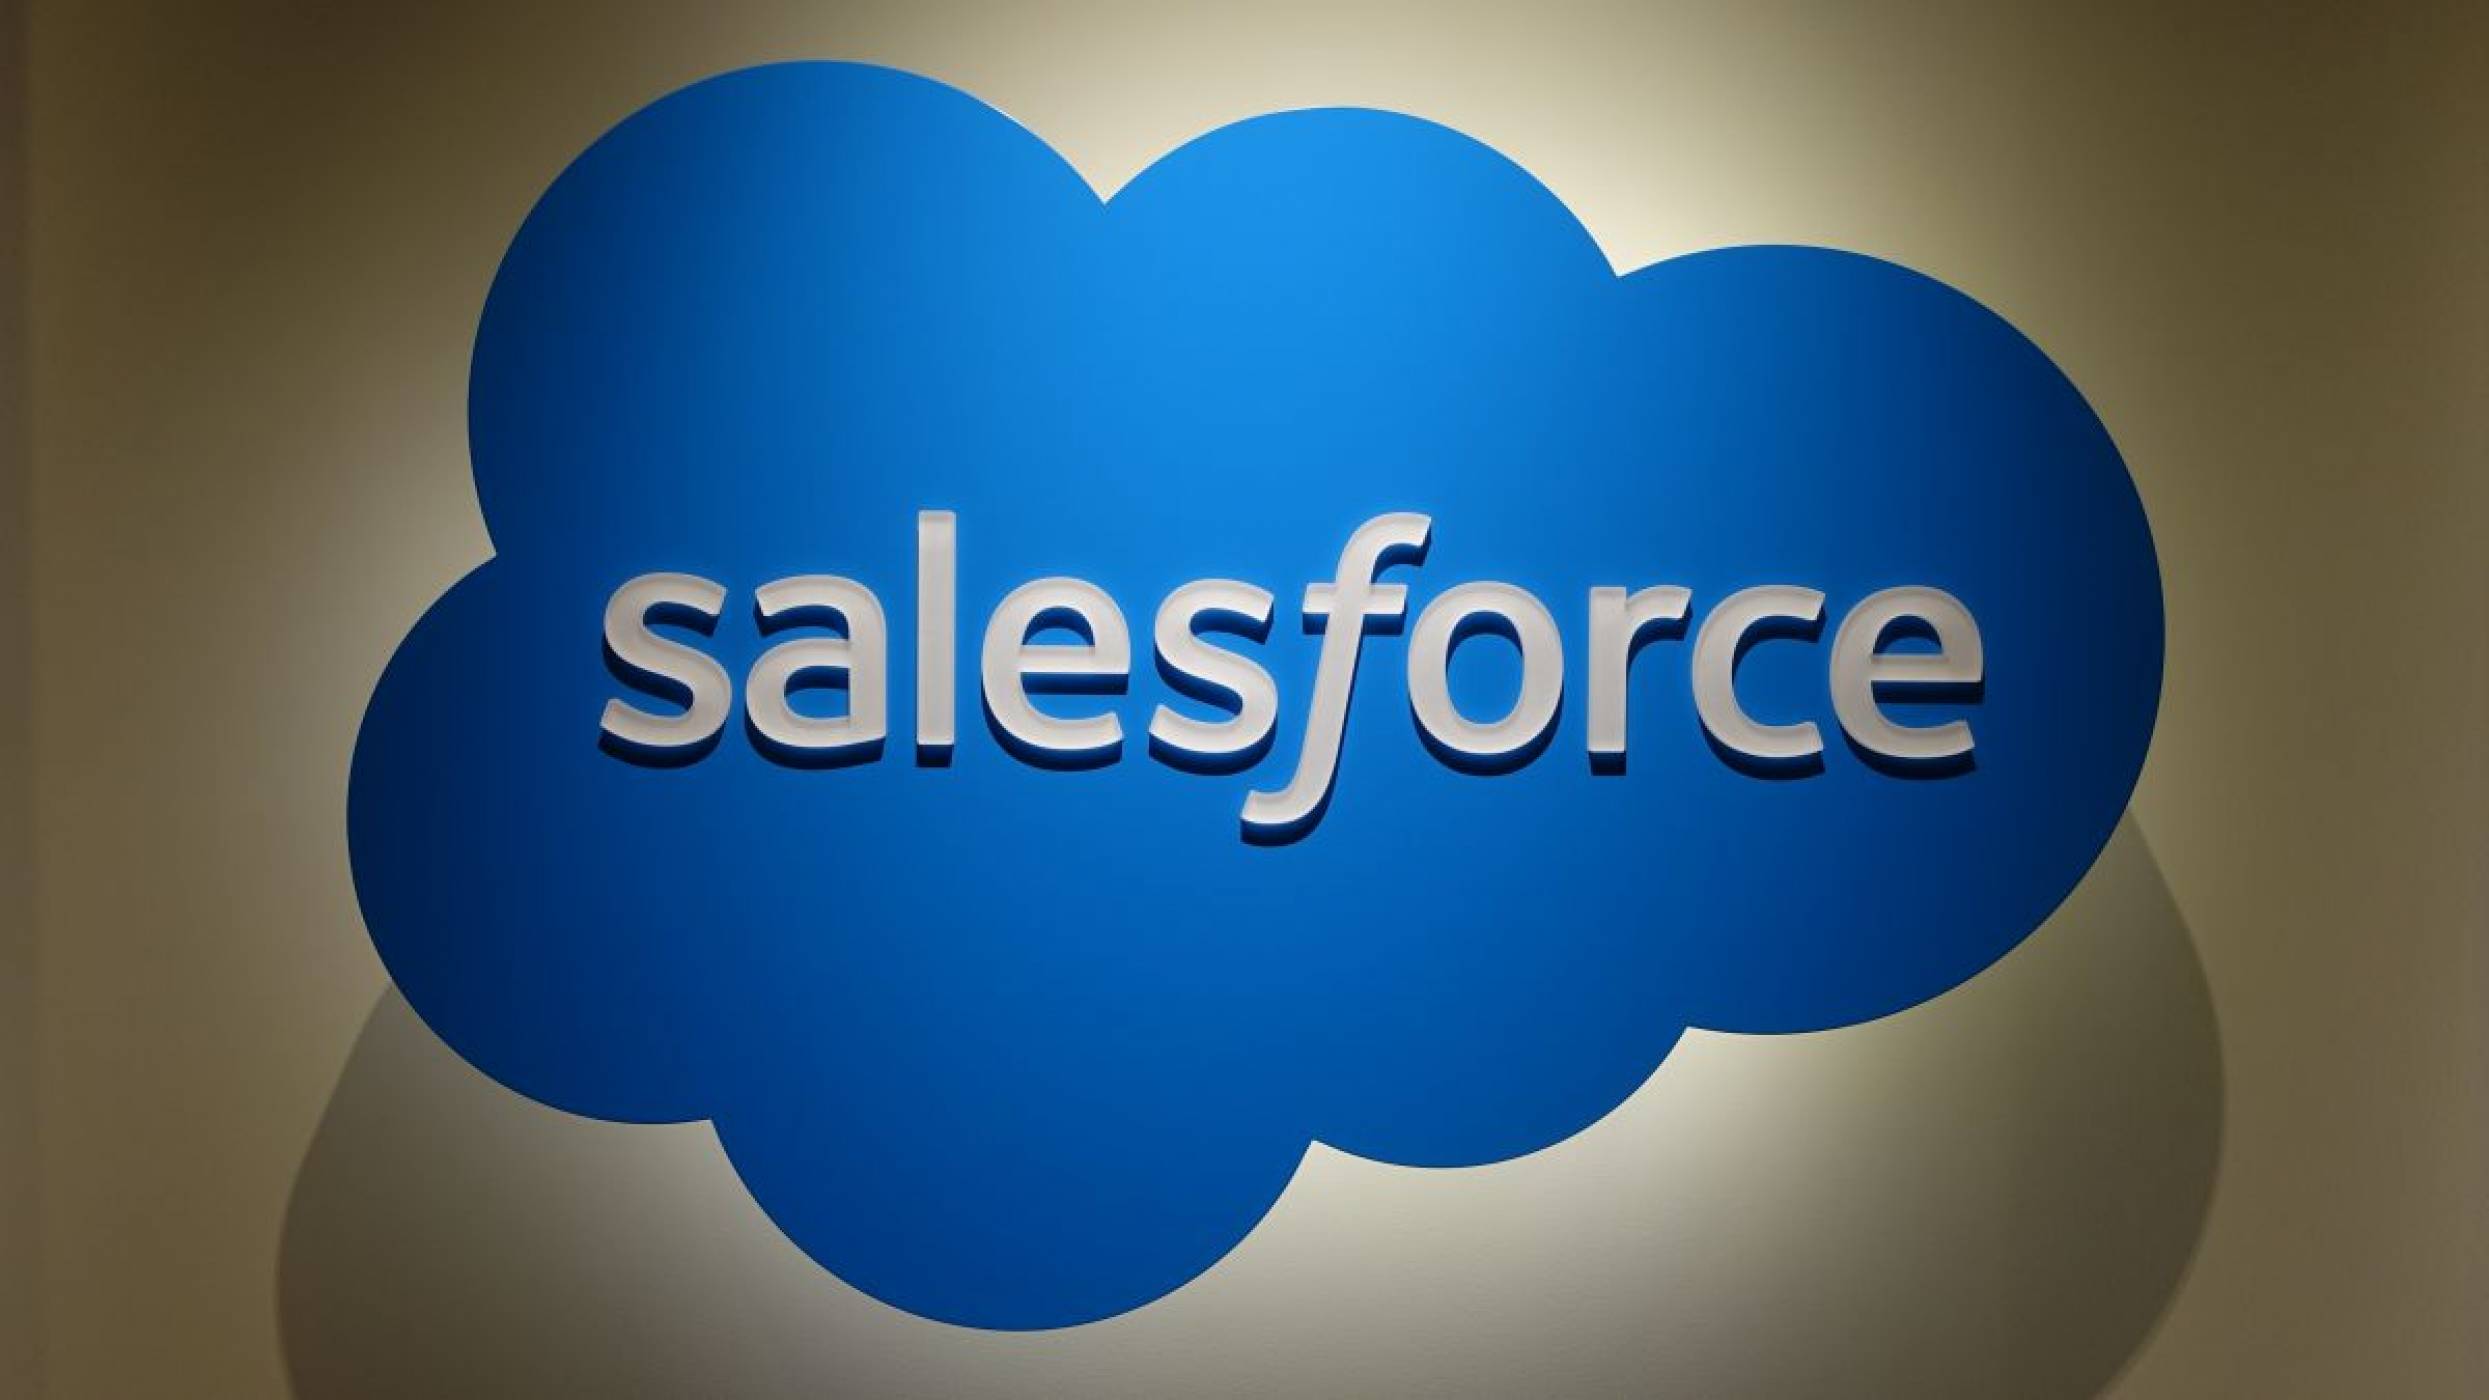 Петата дигитална Salesforce конференция в България ще се проведе през март